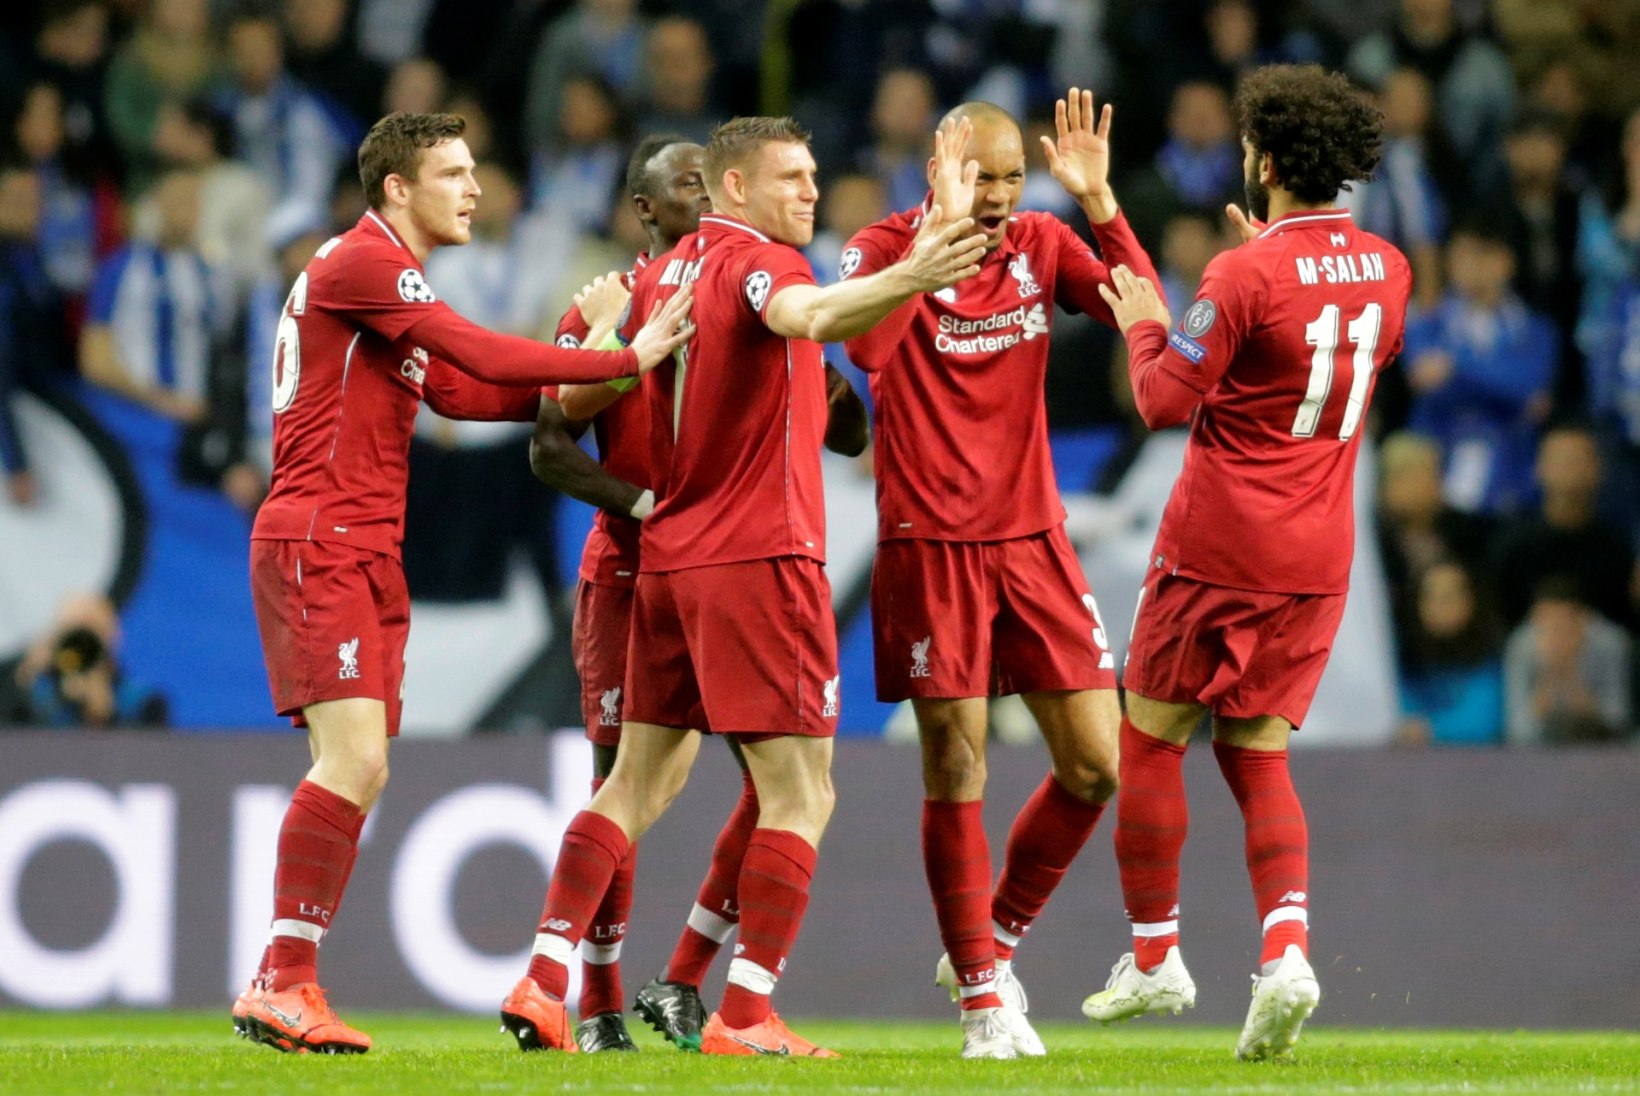 FOTOD | Meistrite liiga neli paremat selged: Manchesteris sai näha enneolematut väravatesadu, Liverpool näitas muskilt